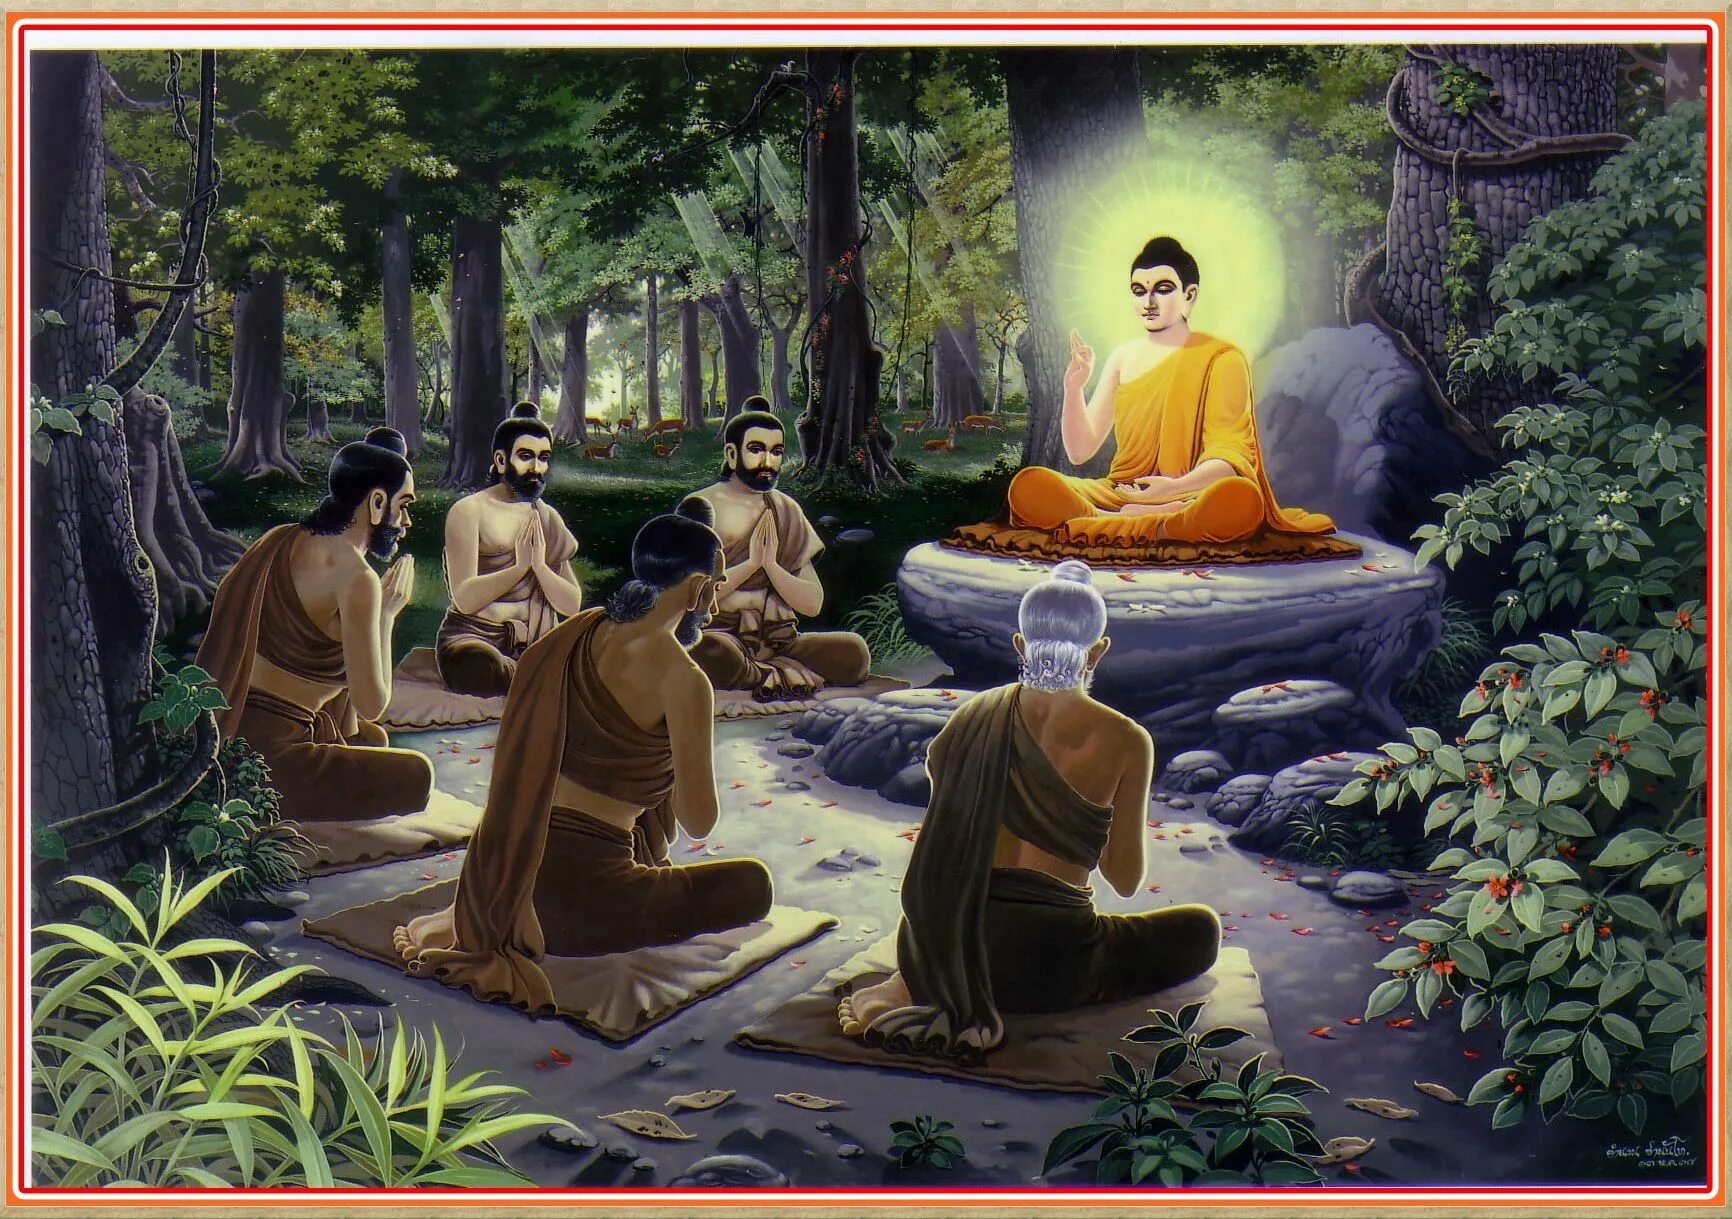 Сиддхартха Гаутама Будда. Будда Сиддхартха Гаутама Шакьямуни. Жизнь Сиддхартха Гаутама. Легенда о Будде Гаутама. Страна возникновения буддизма